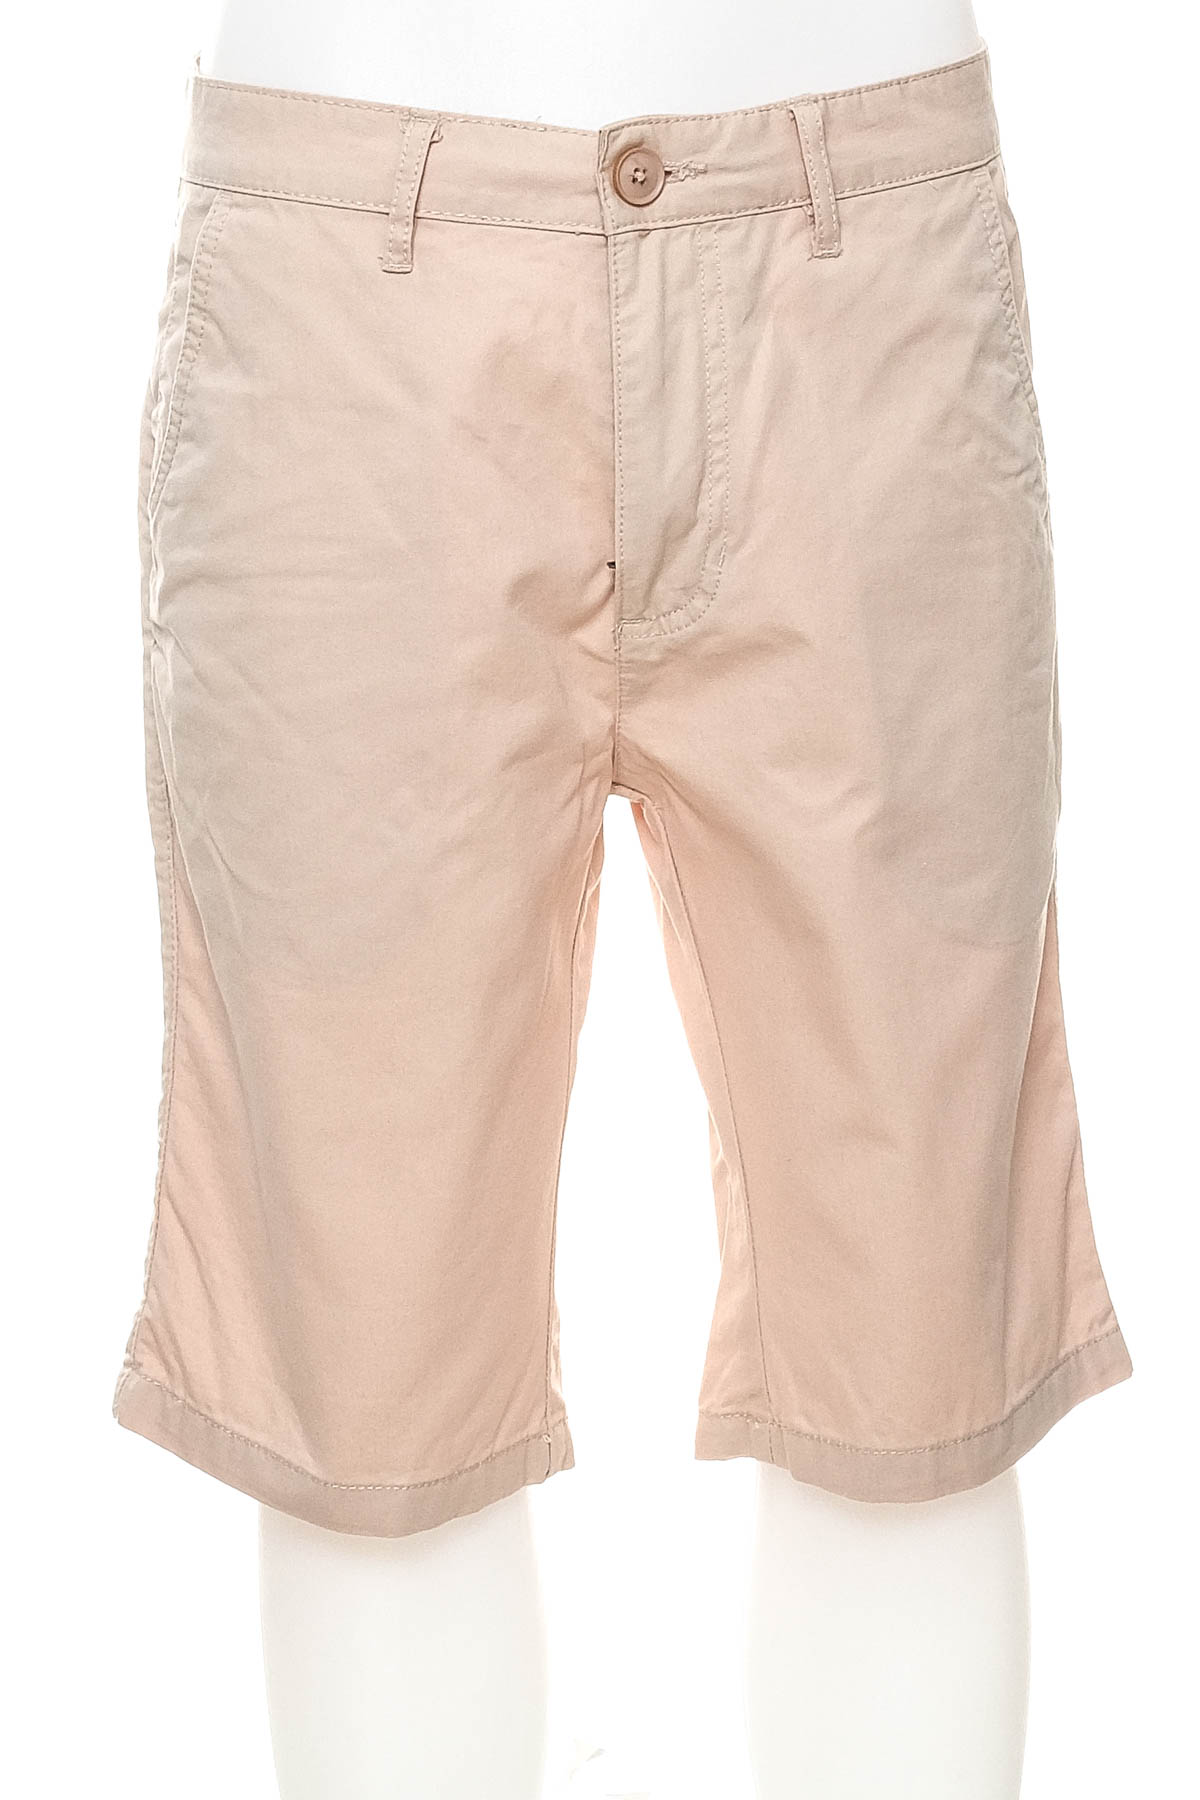 Men's shorts - BellField. - 0